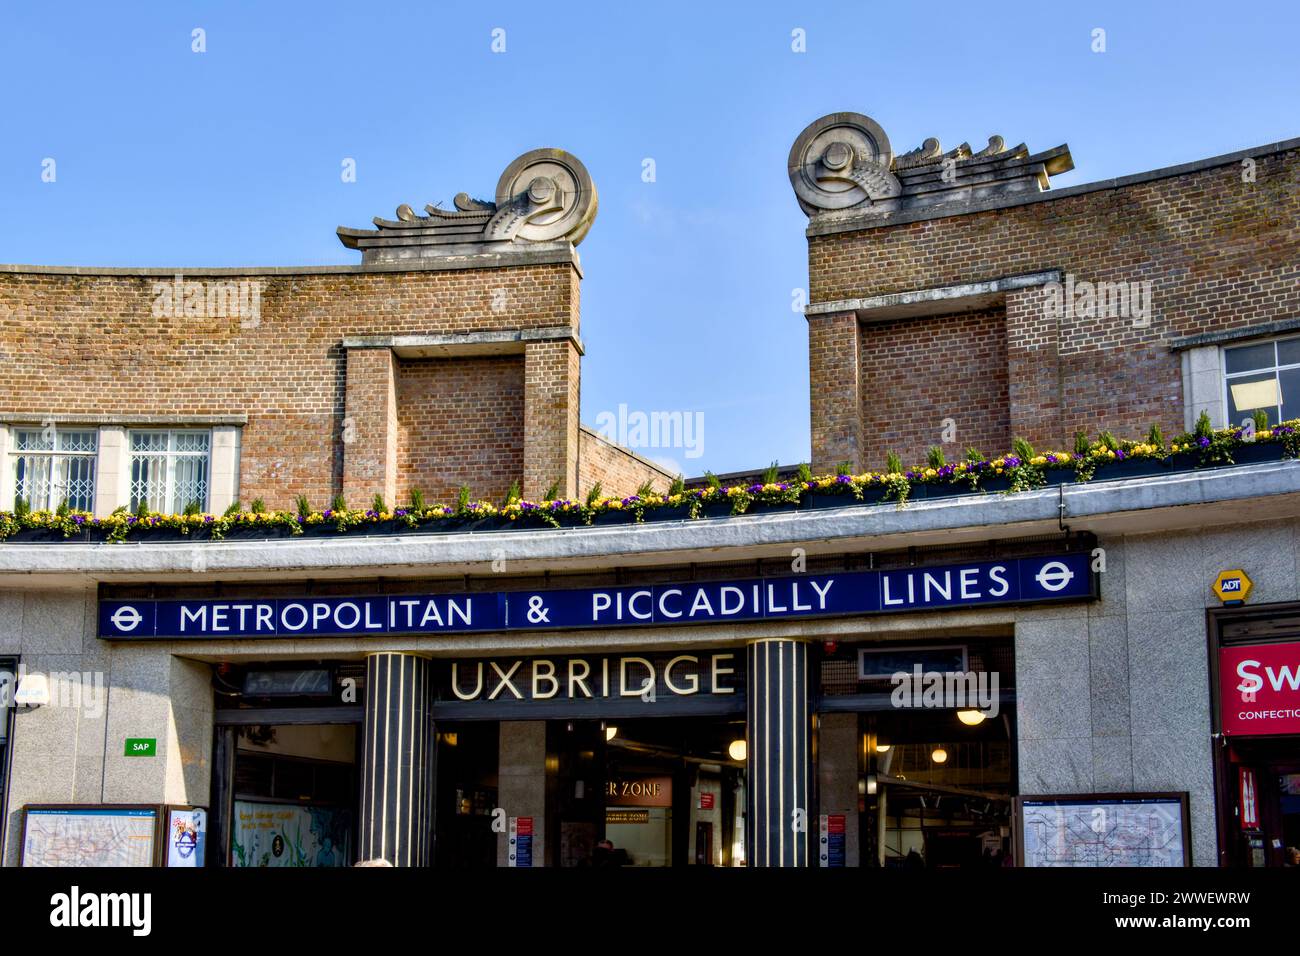 Uxbridge Underground Station, High Street, Uxbridge, Borough of Hillingdon, London, England, Uk Stock Photo